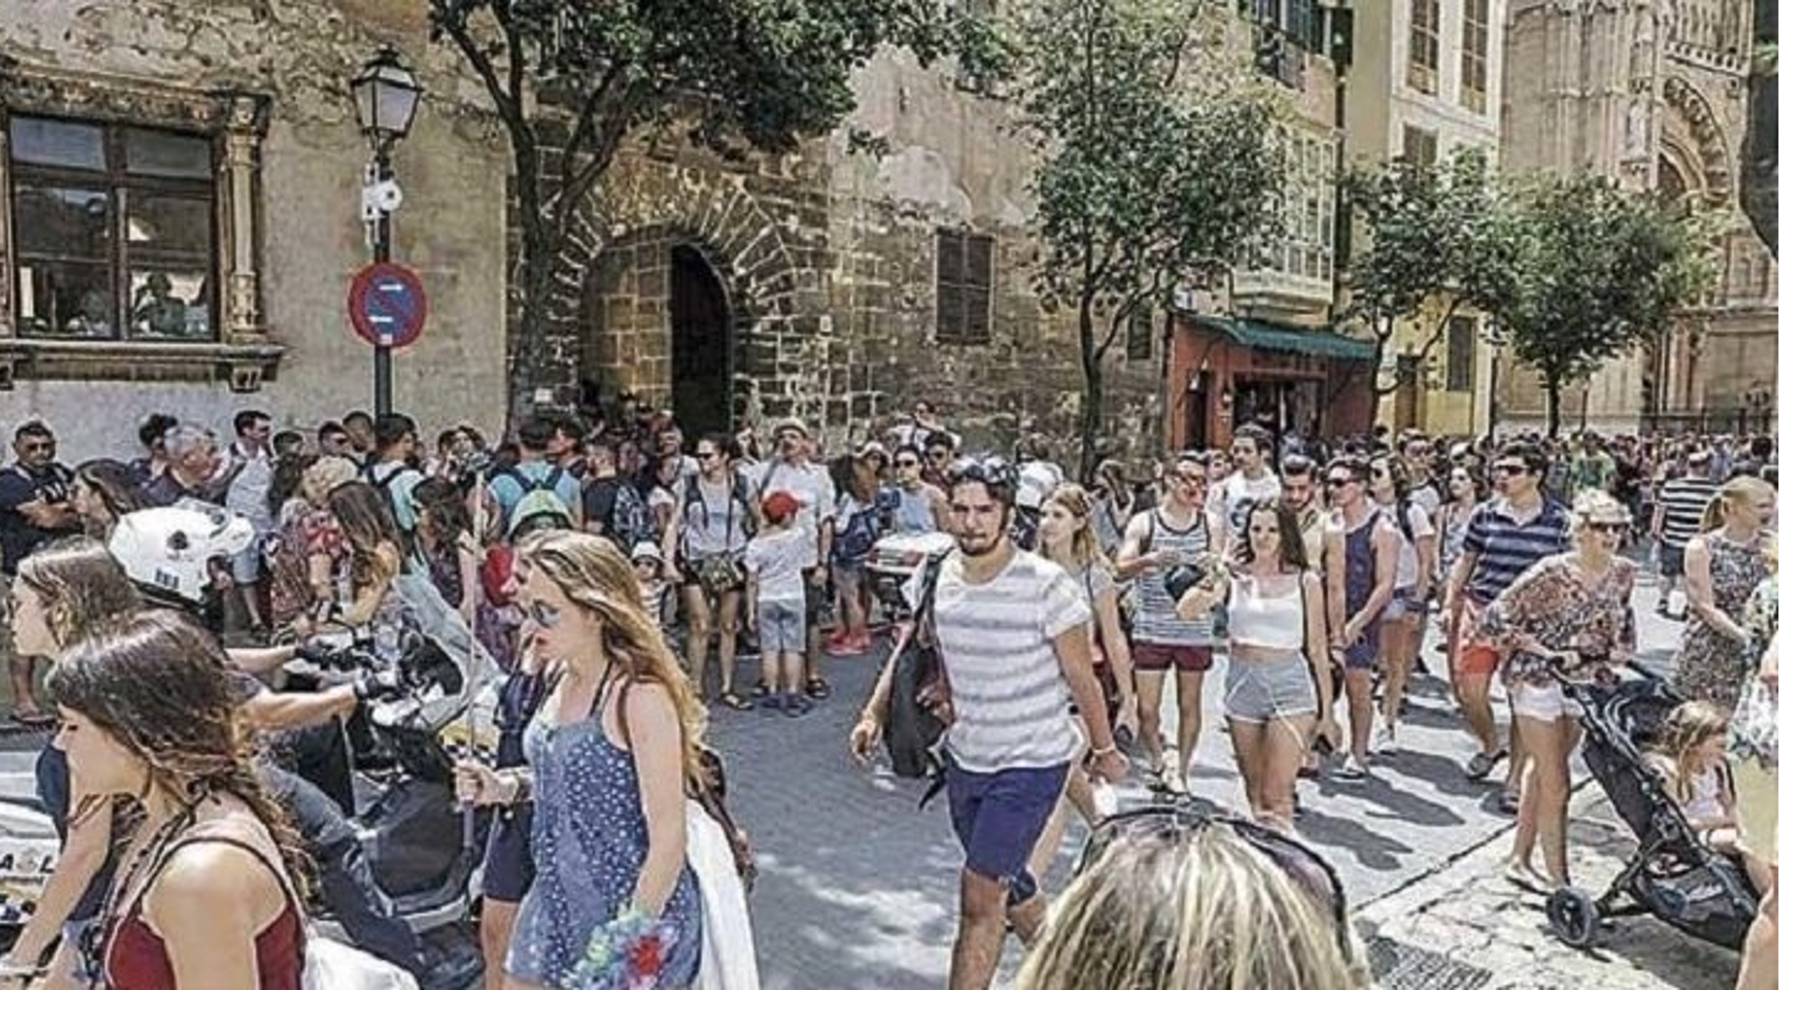 Turistas en el centro histórico de Palma.